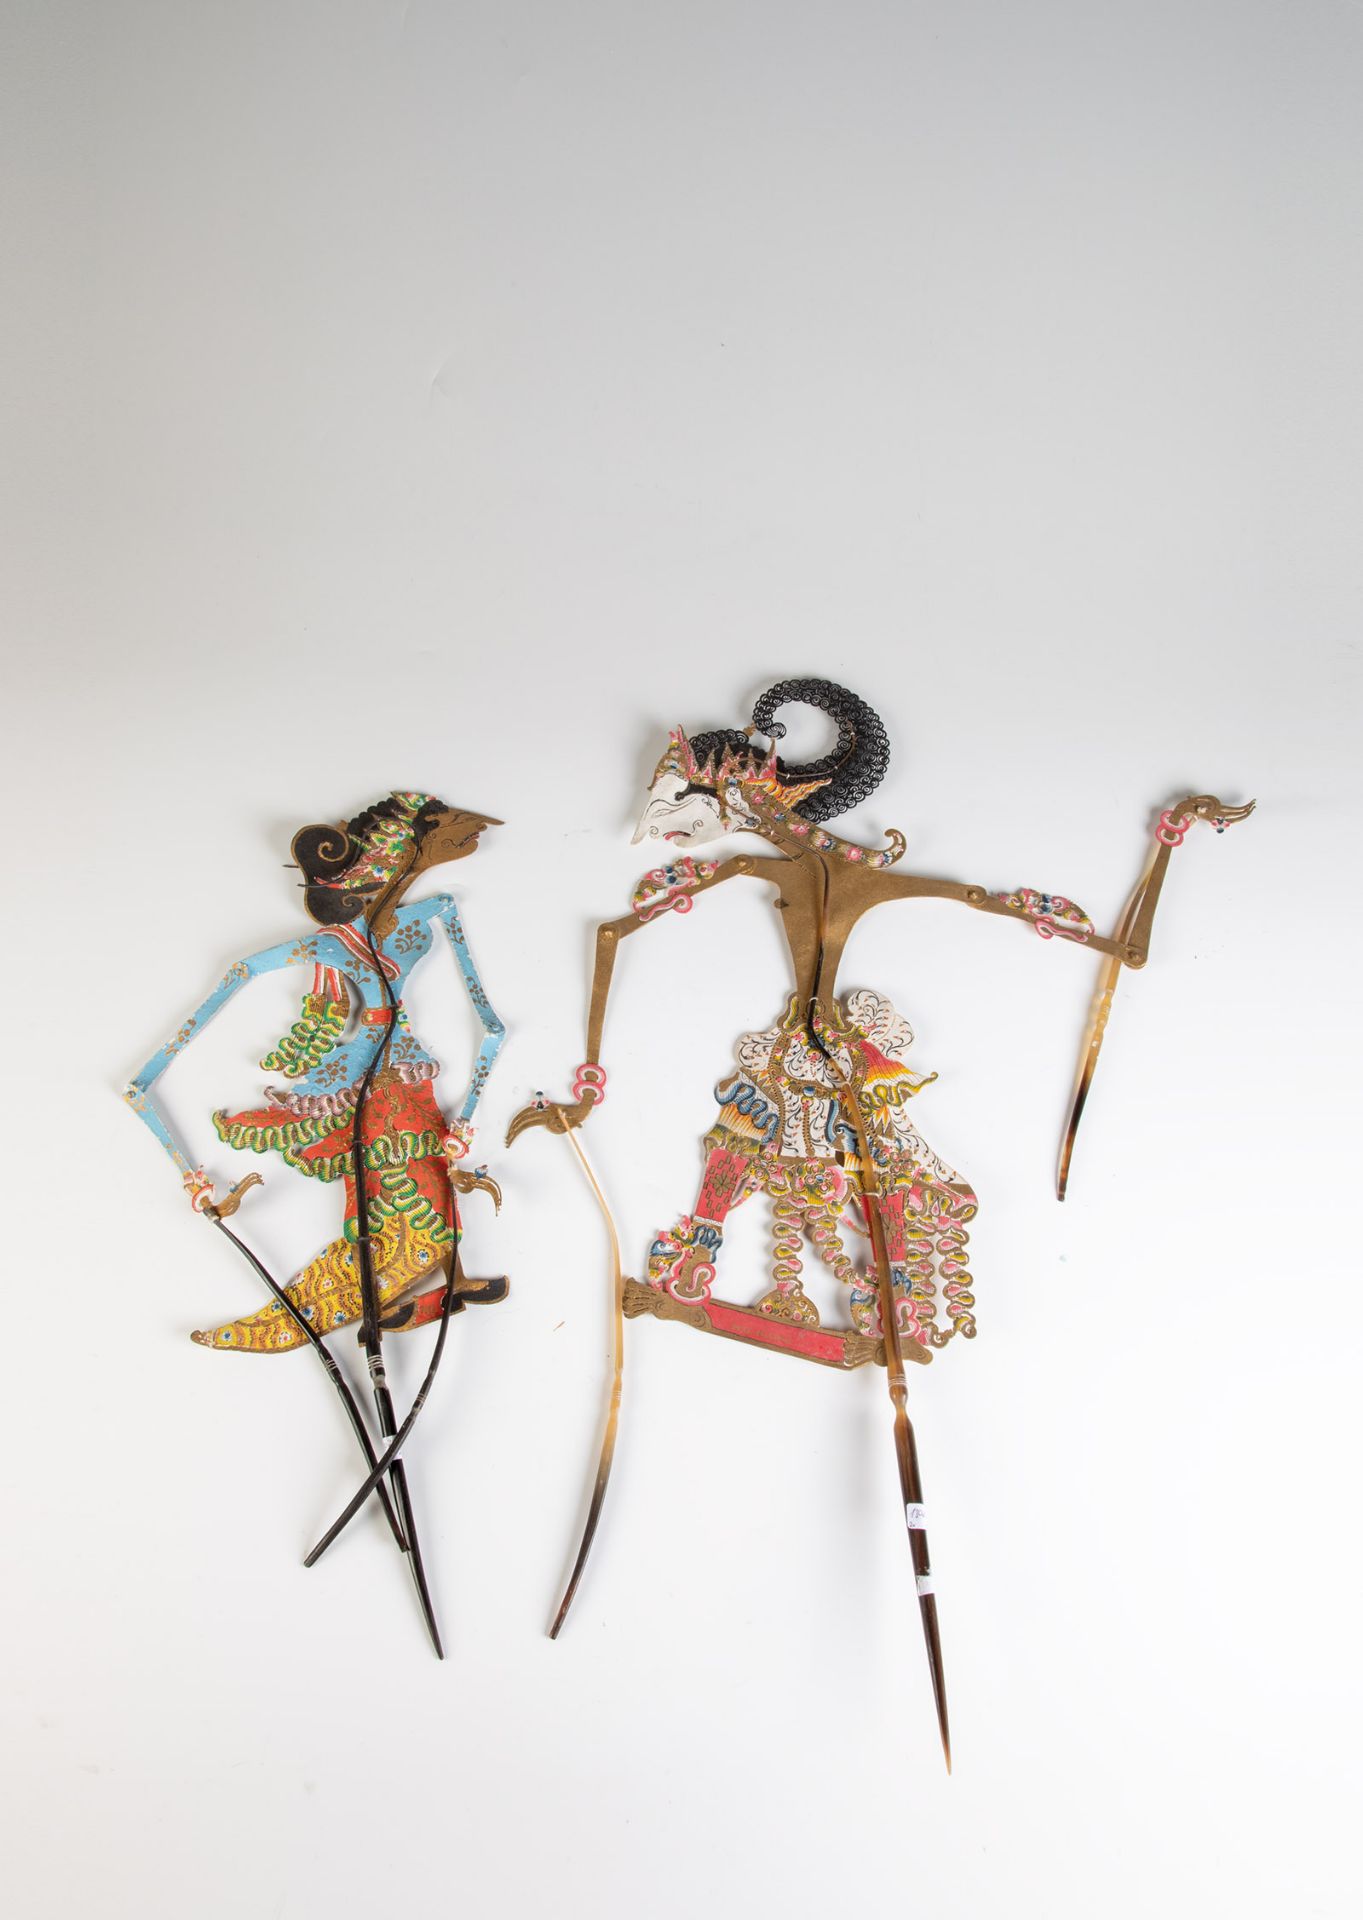 Zwei Wayang Kulit-Figuren